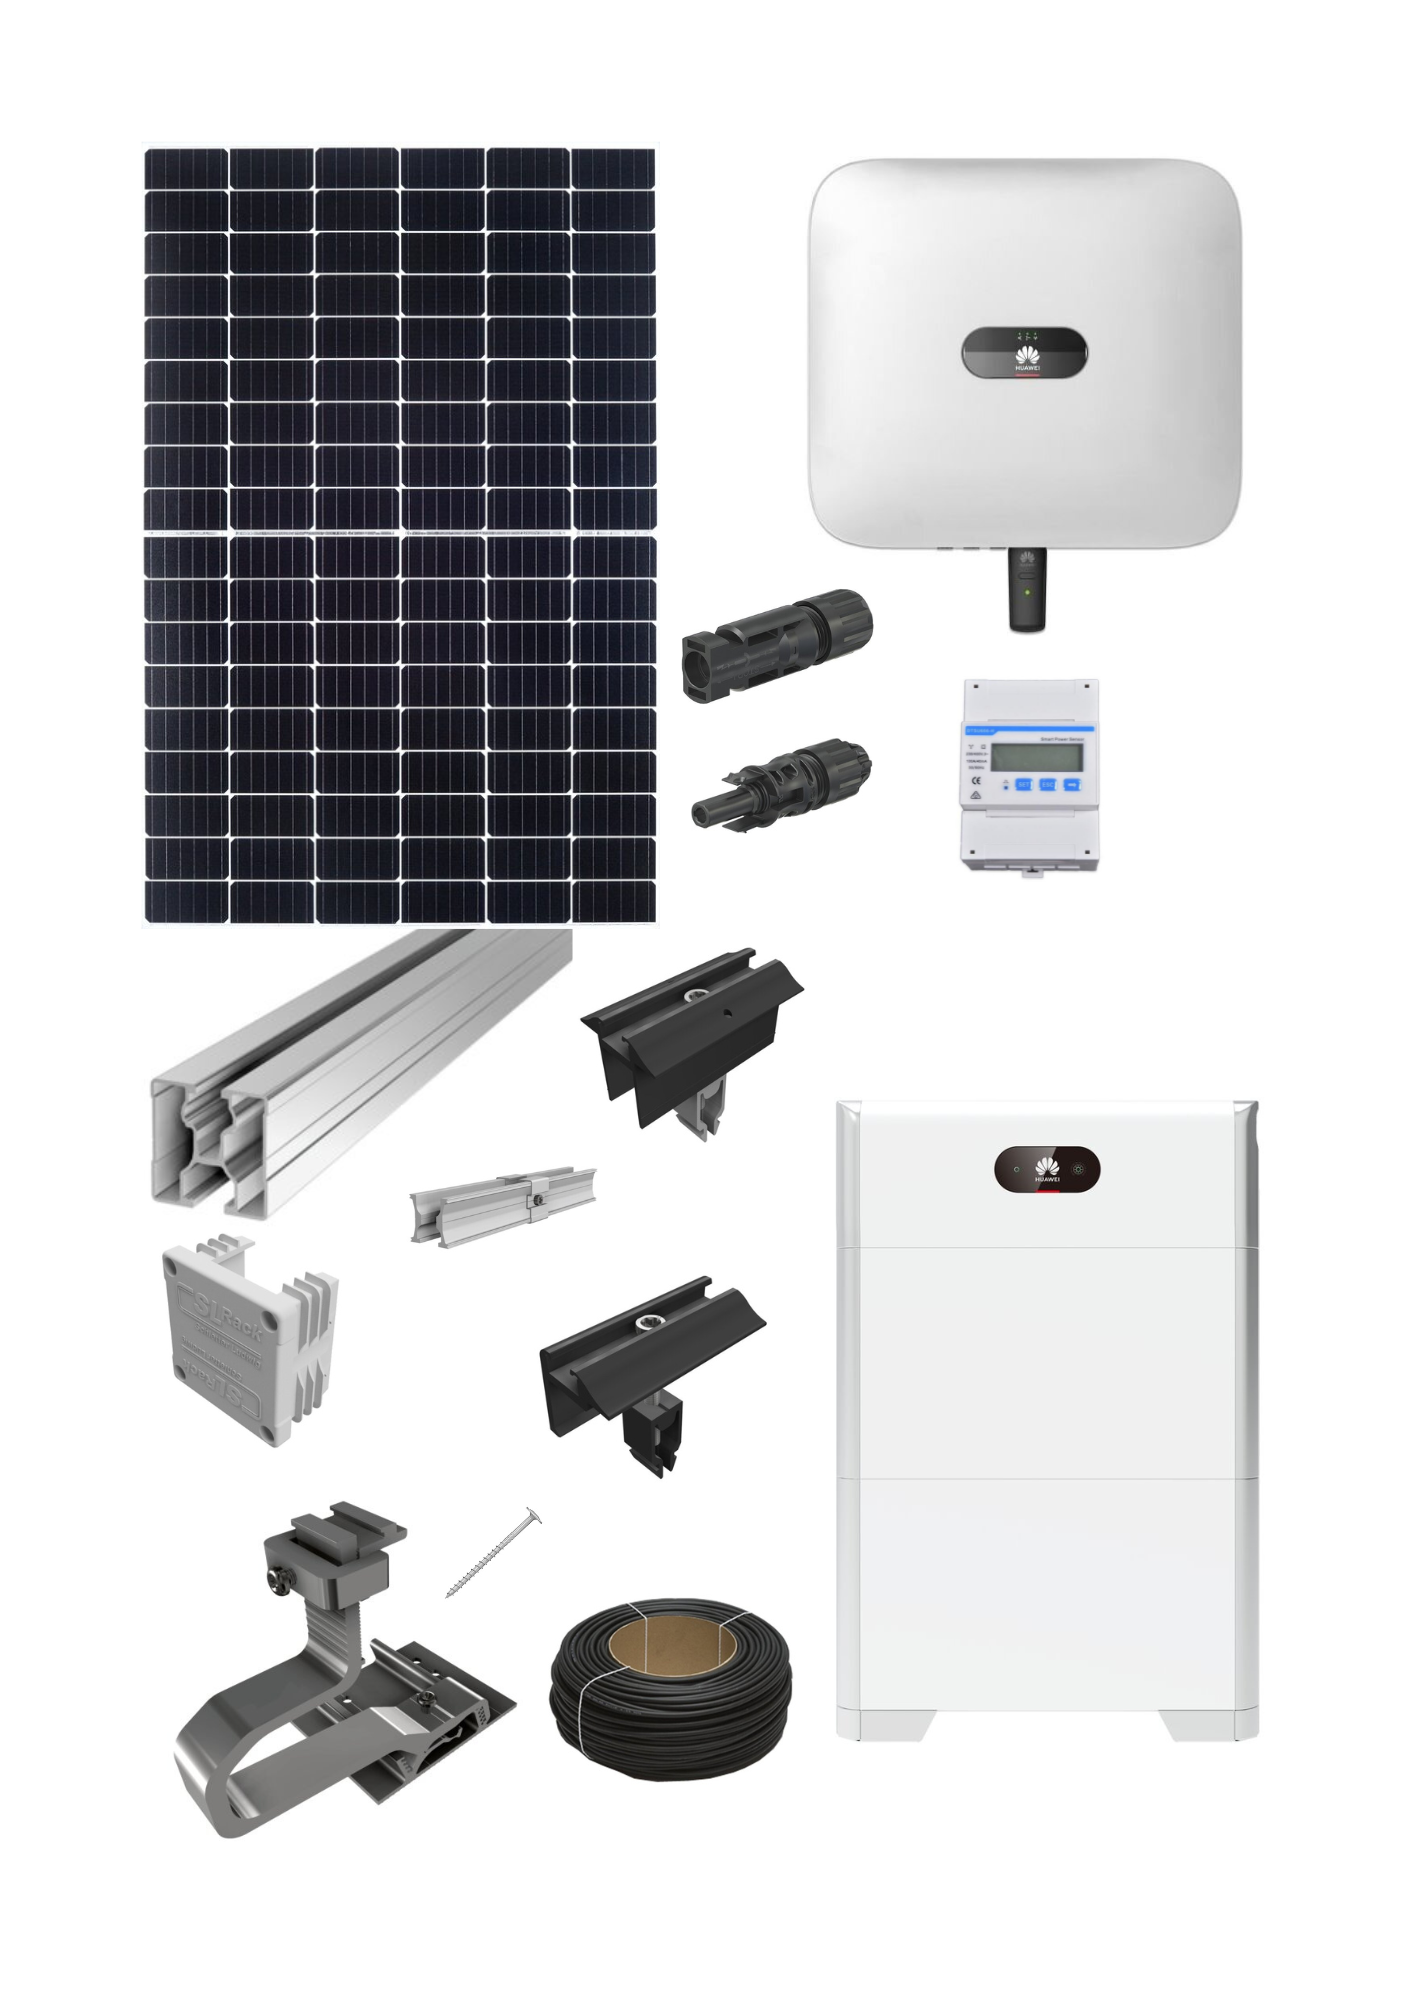 RENAC PV Wechselrichter: On-Grid-Solar-Wechselrichter, 3-phasig, 10 kW, mit  Dual-MPP-Tracker (Photovoltaik-Wechselrichter)